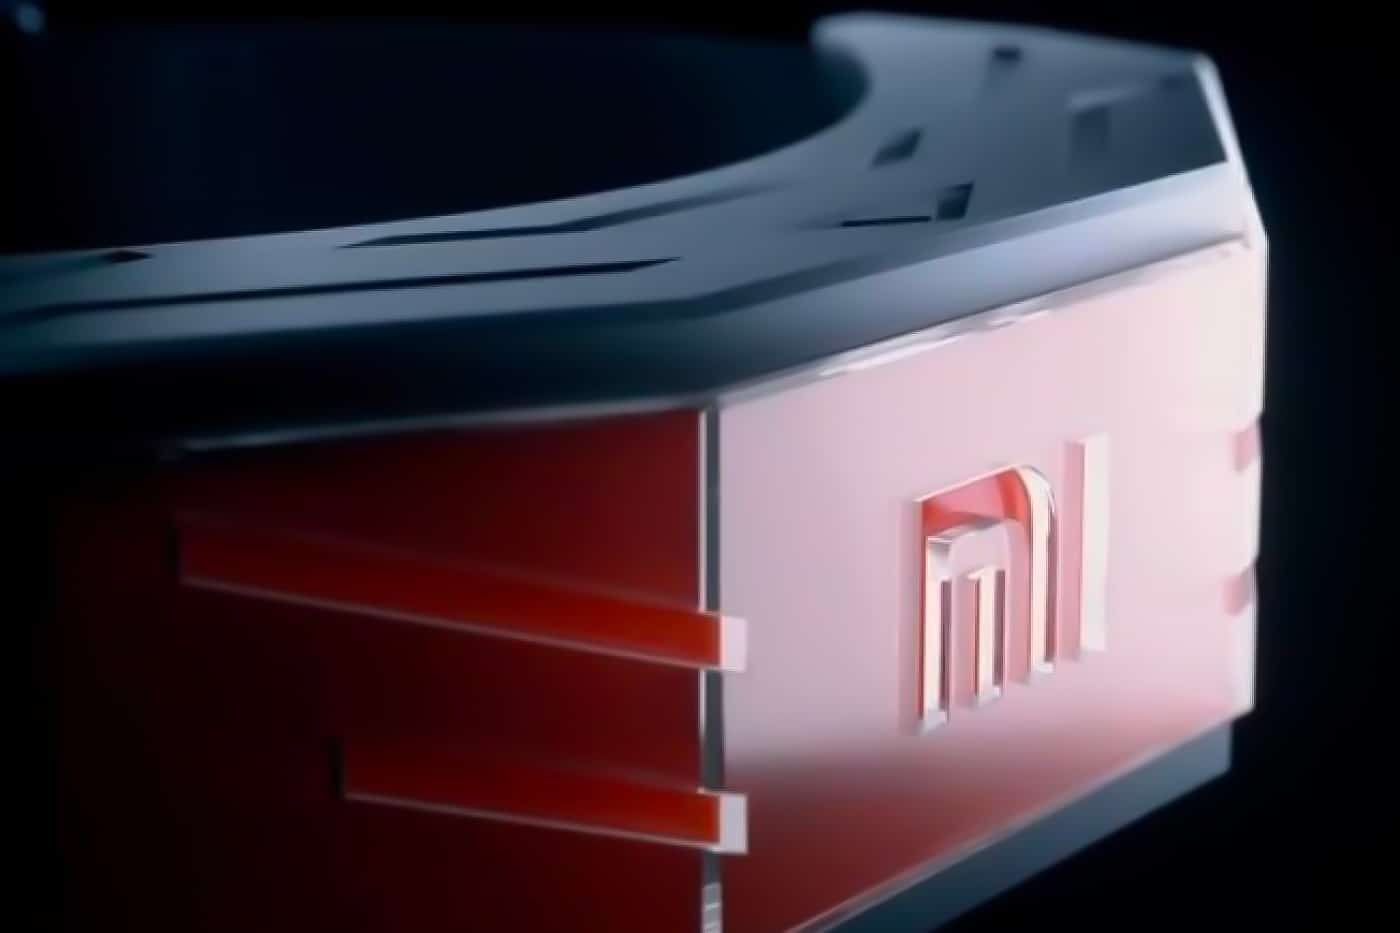 Xiaomi MiGu Headband bestuur slimme apparaten met gedachten